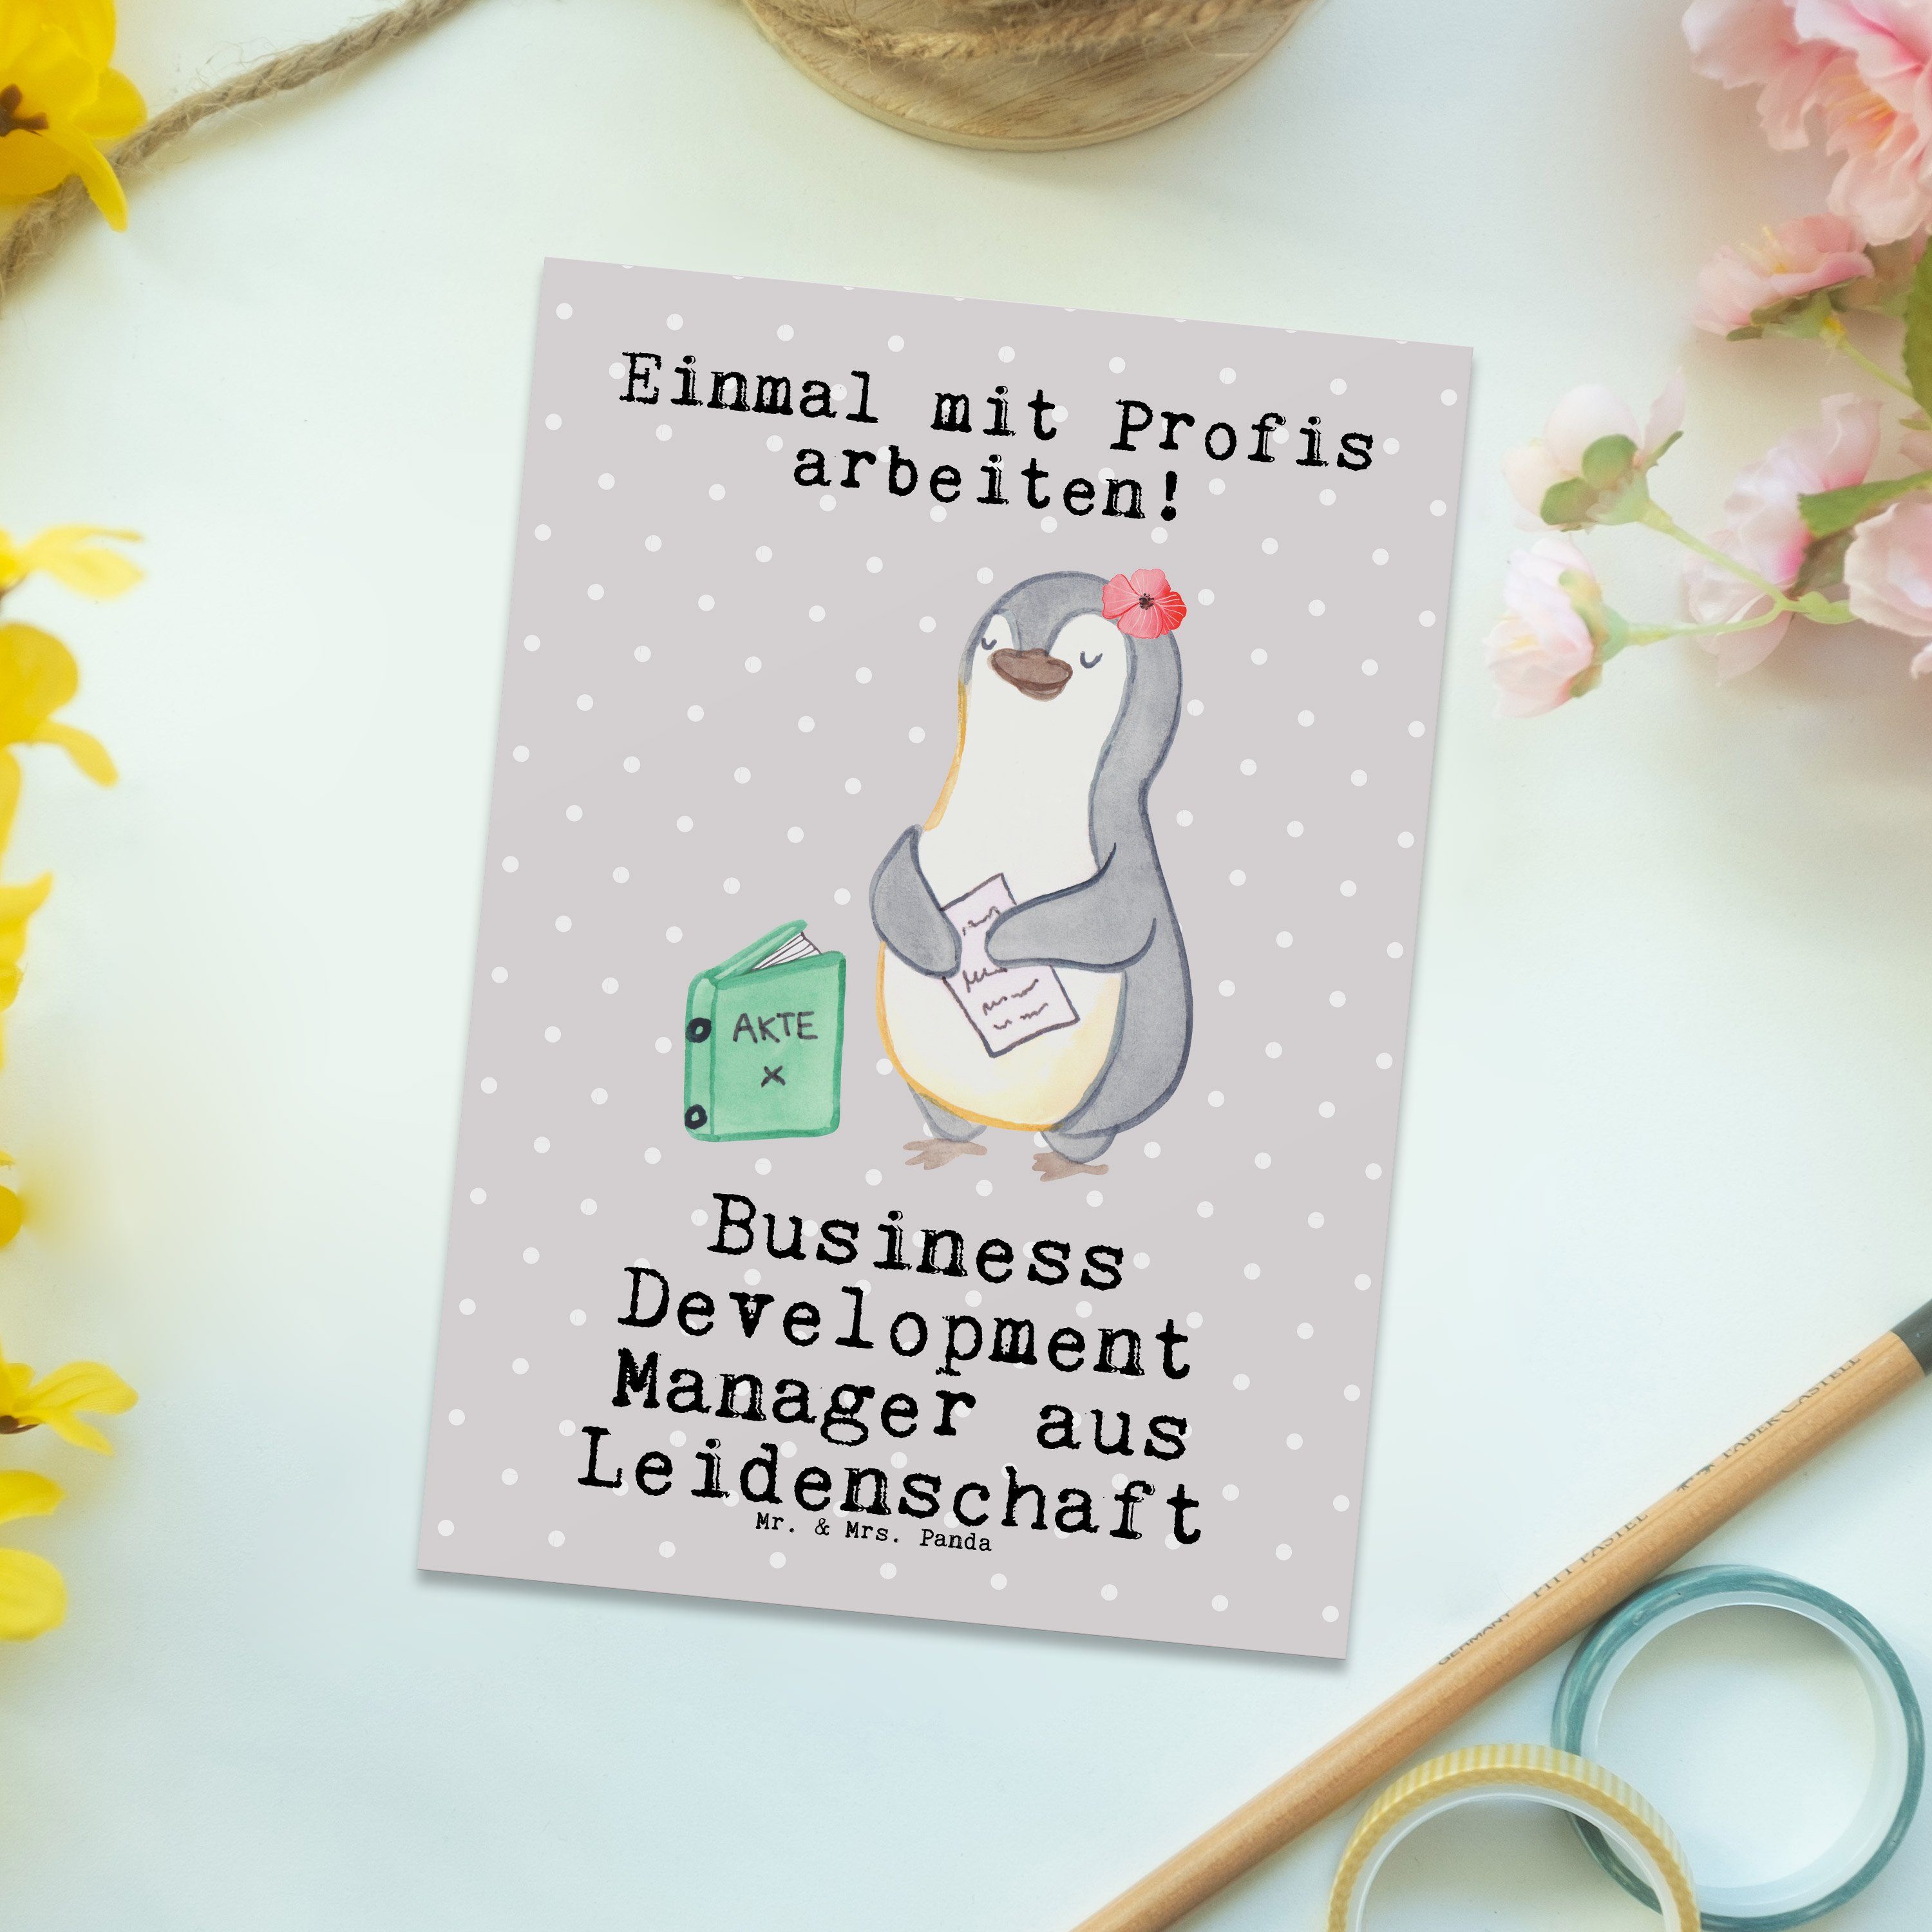 aus Grau Business Manager Development Mrs. Mr. Panda & - Leidenschaft - Postkarte Gesche Pastell